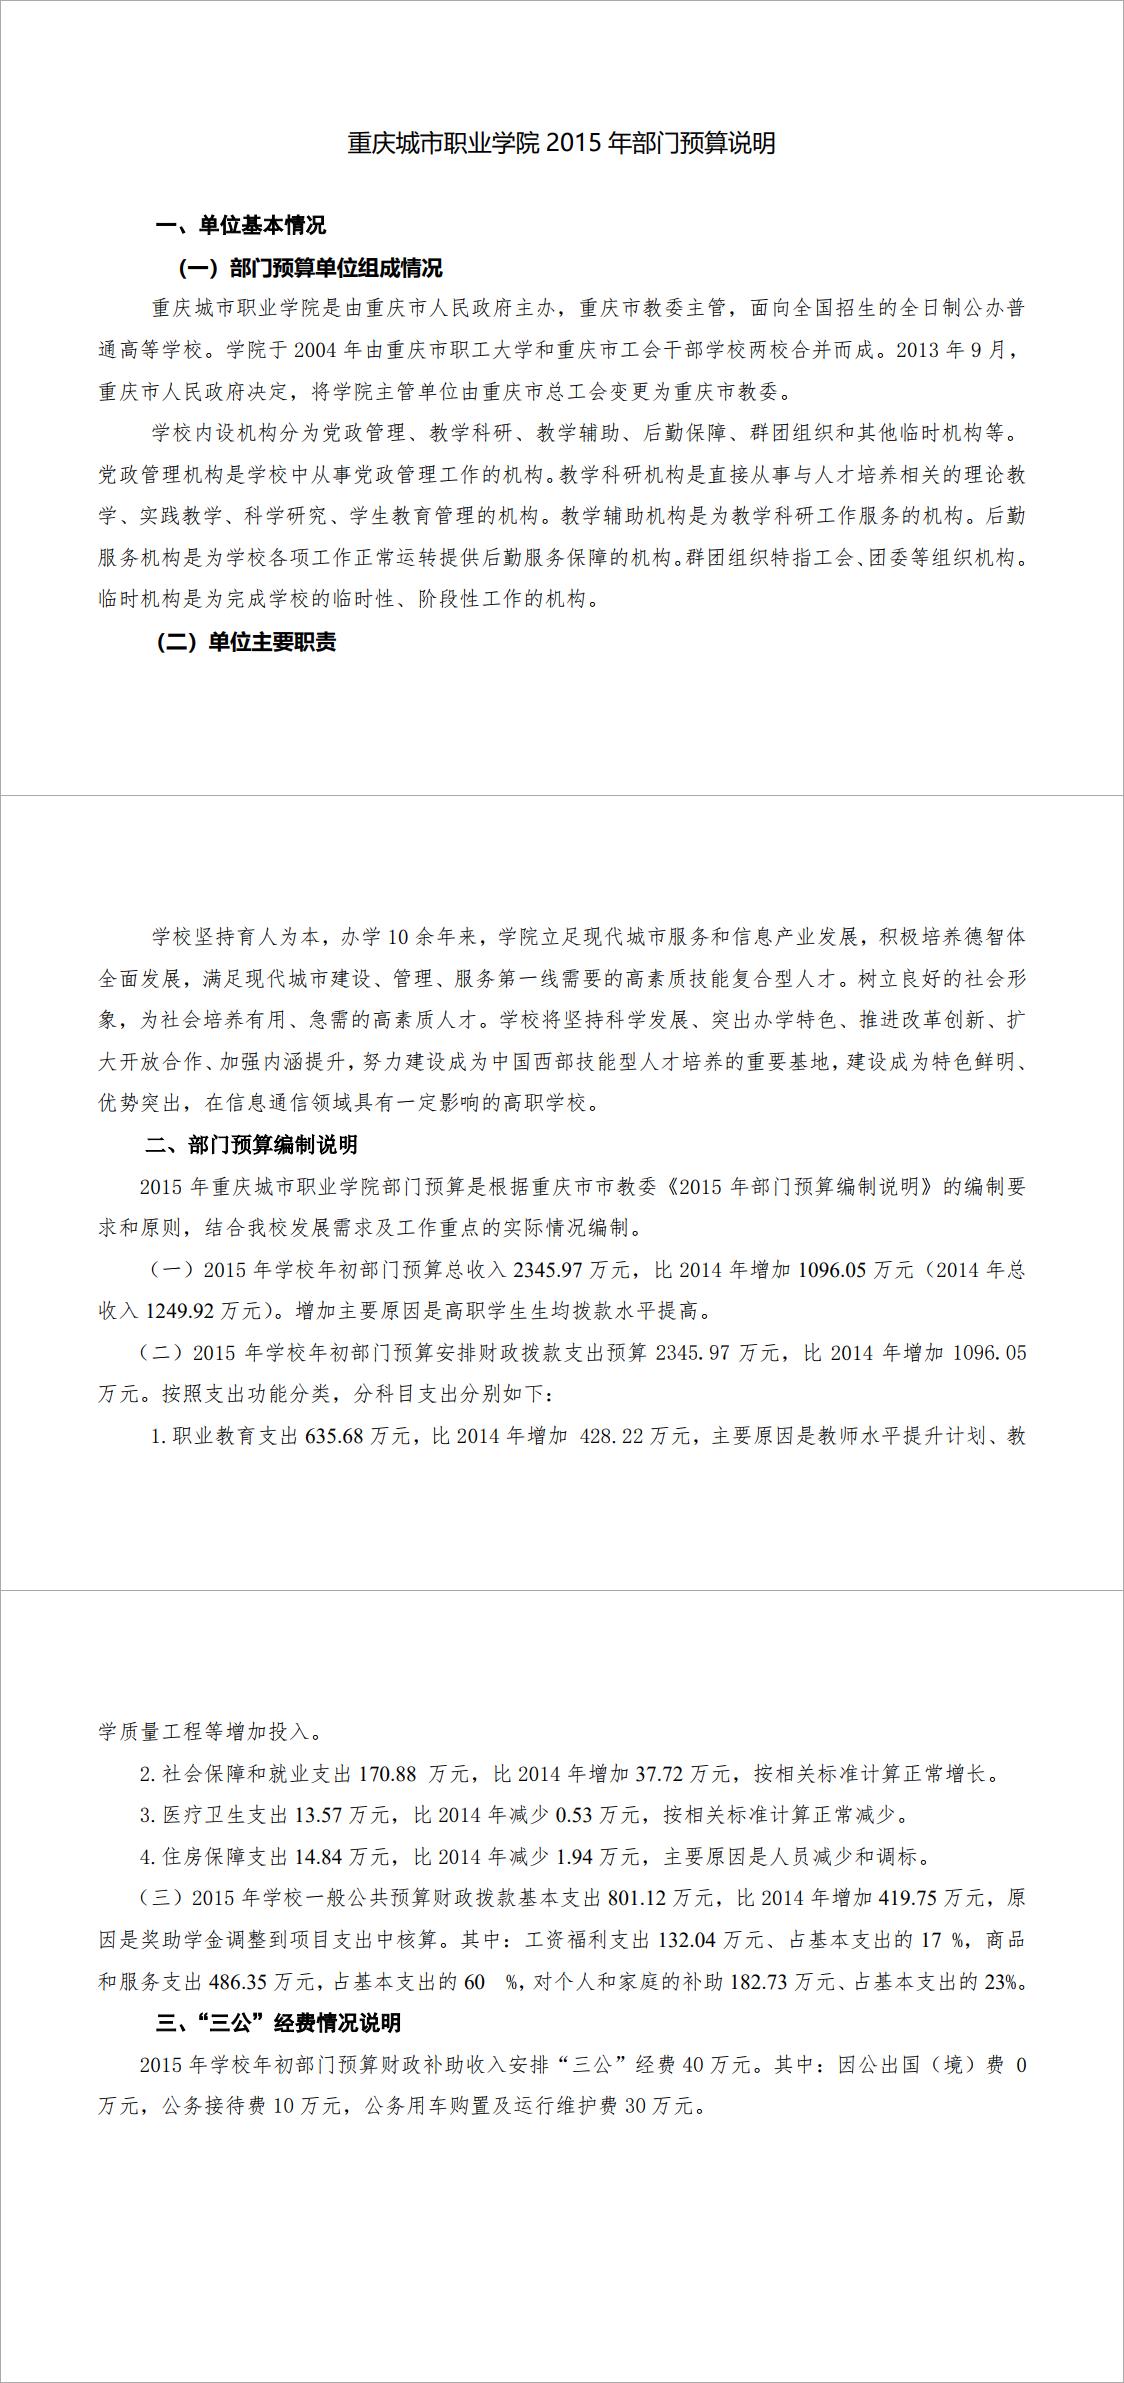 重庆城市职业学院2015年部门预算情况说明